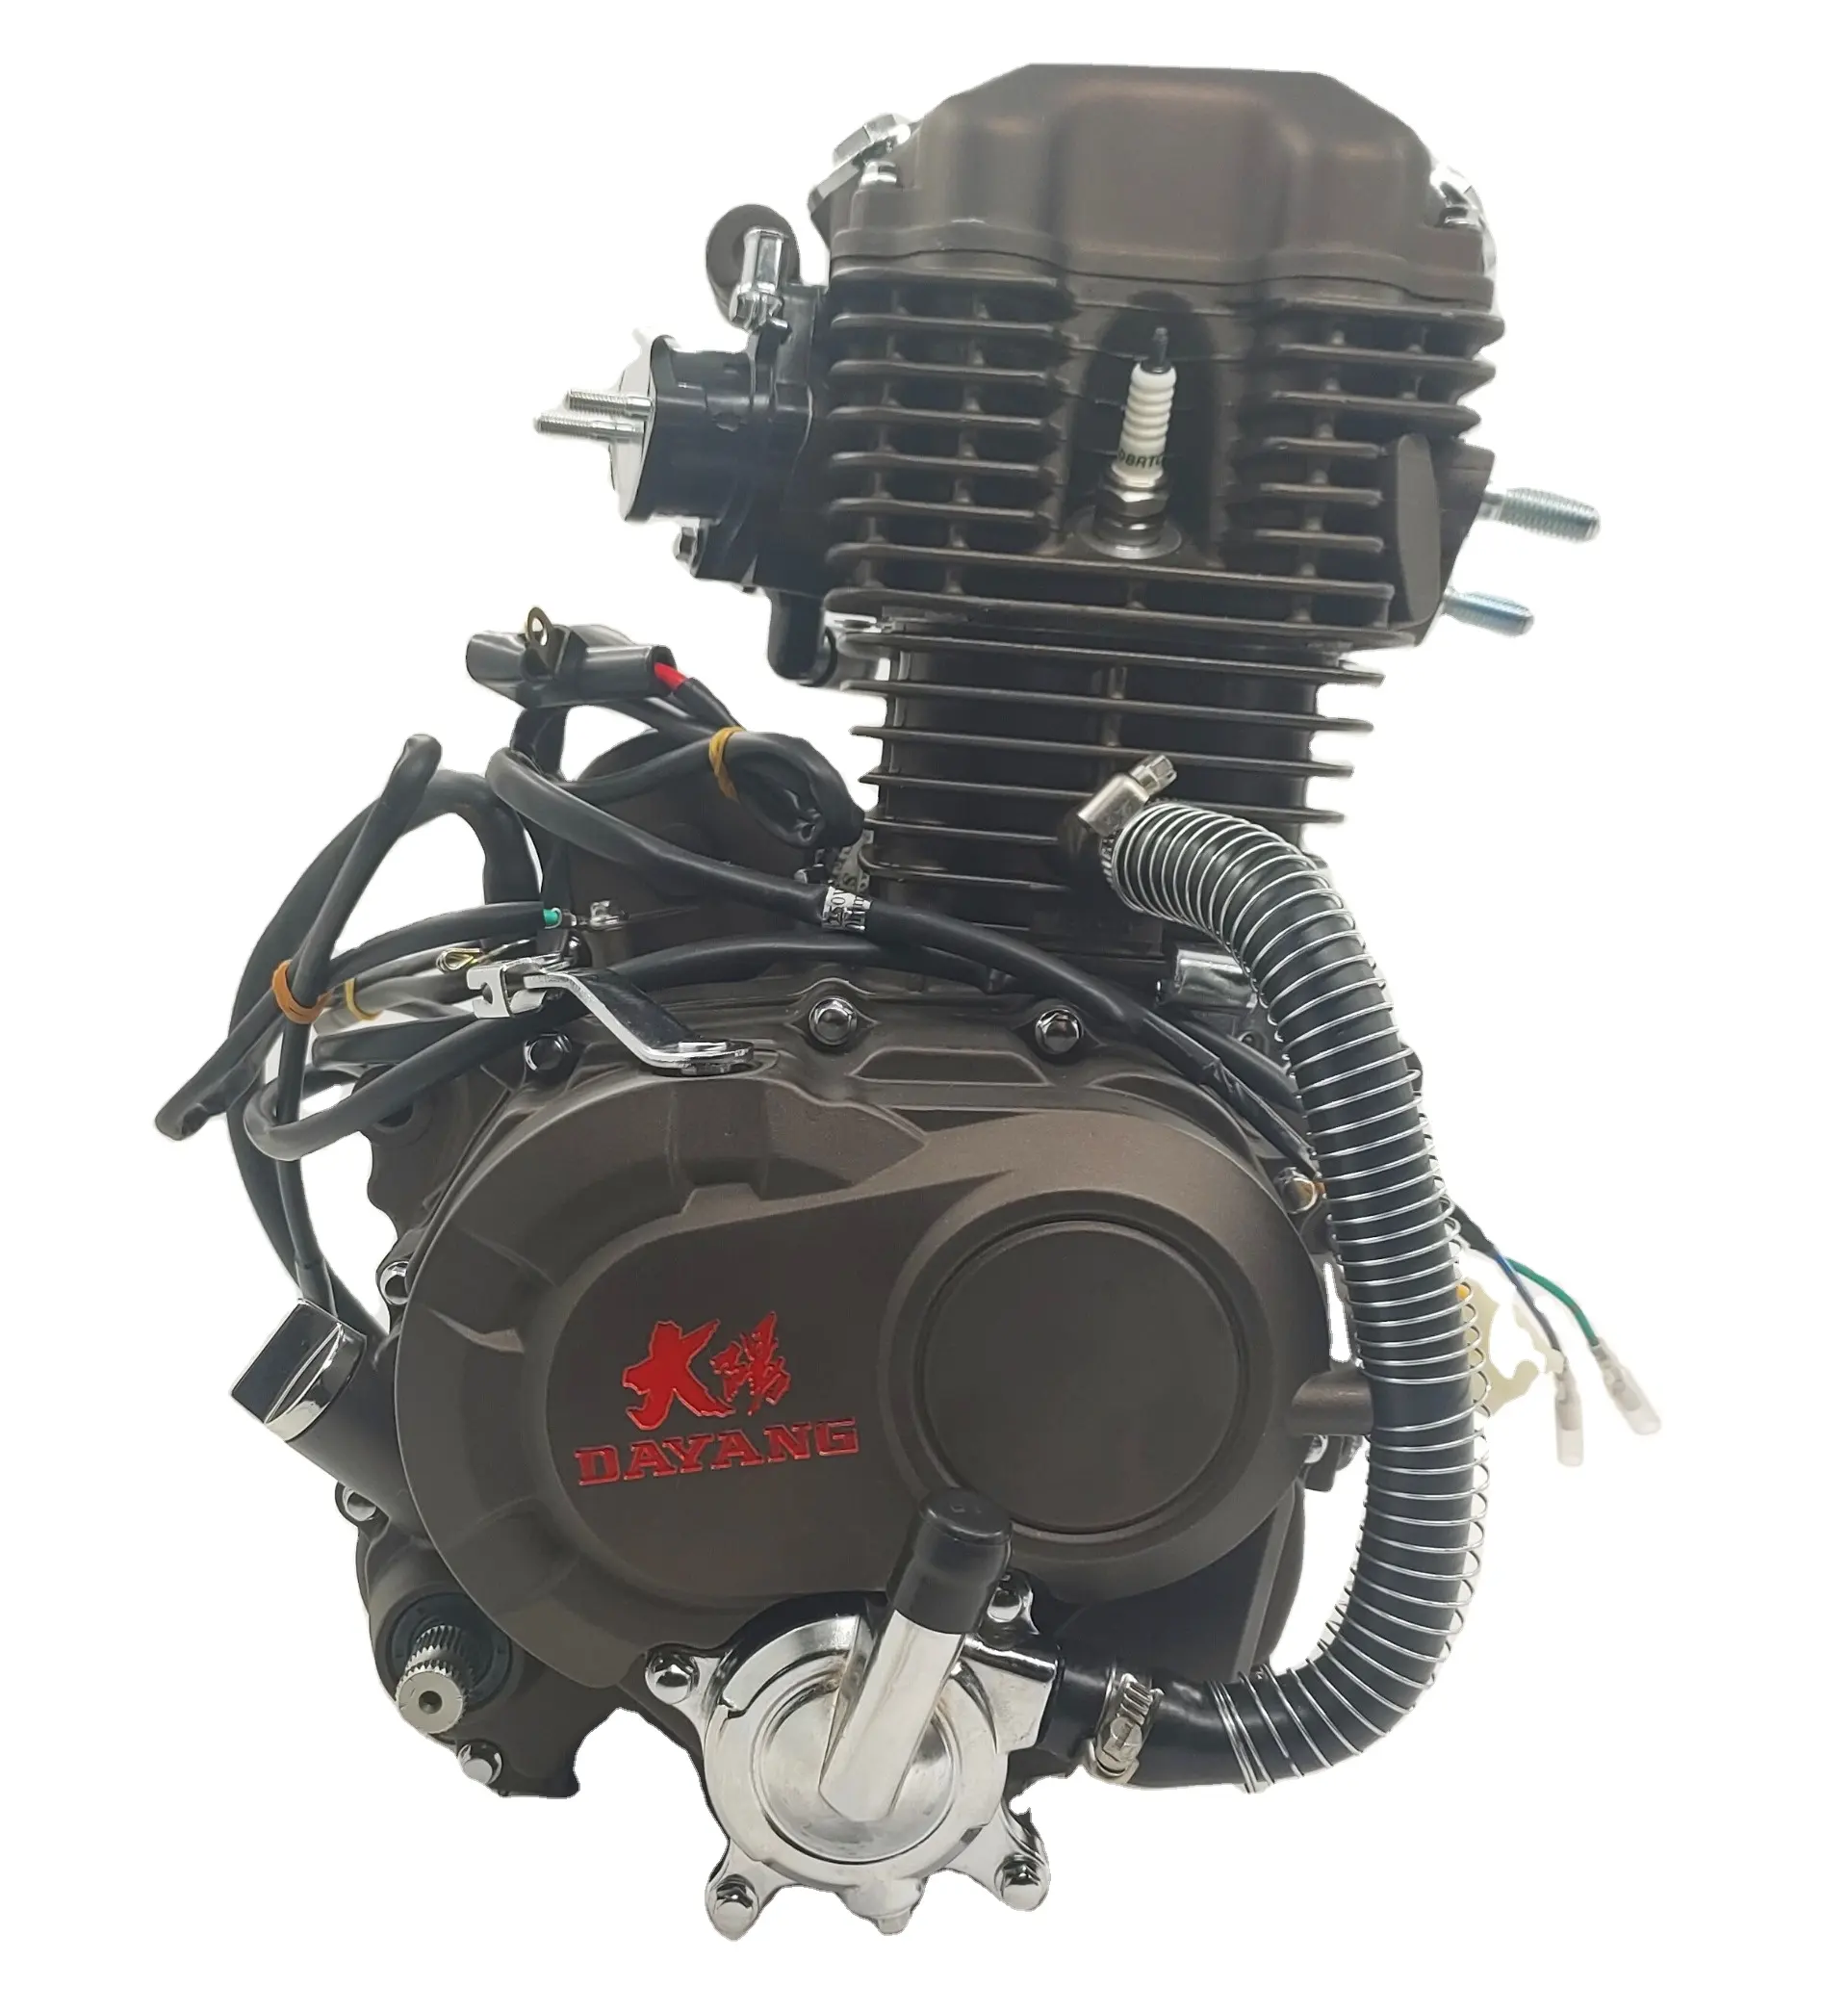 CG200 200cc नई सुपर शांत DAYANG लीफान इंजन एकल सिलेंडर शैली बिजली/लात विधि मूल प्रकार उच्च गुणवत्ता बनाया चीन में